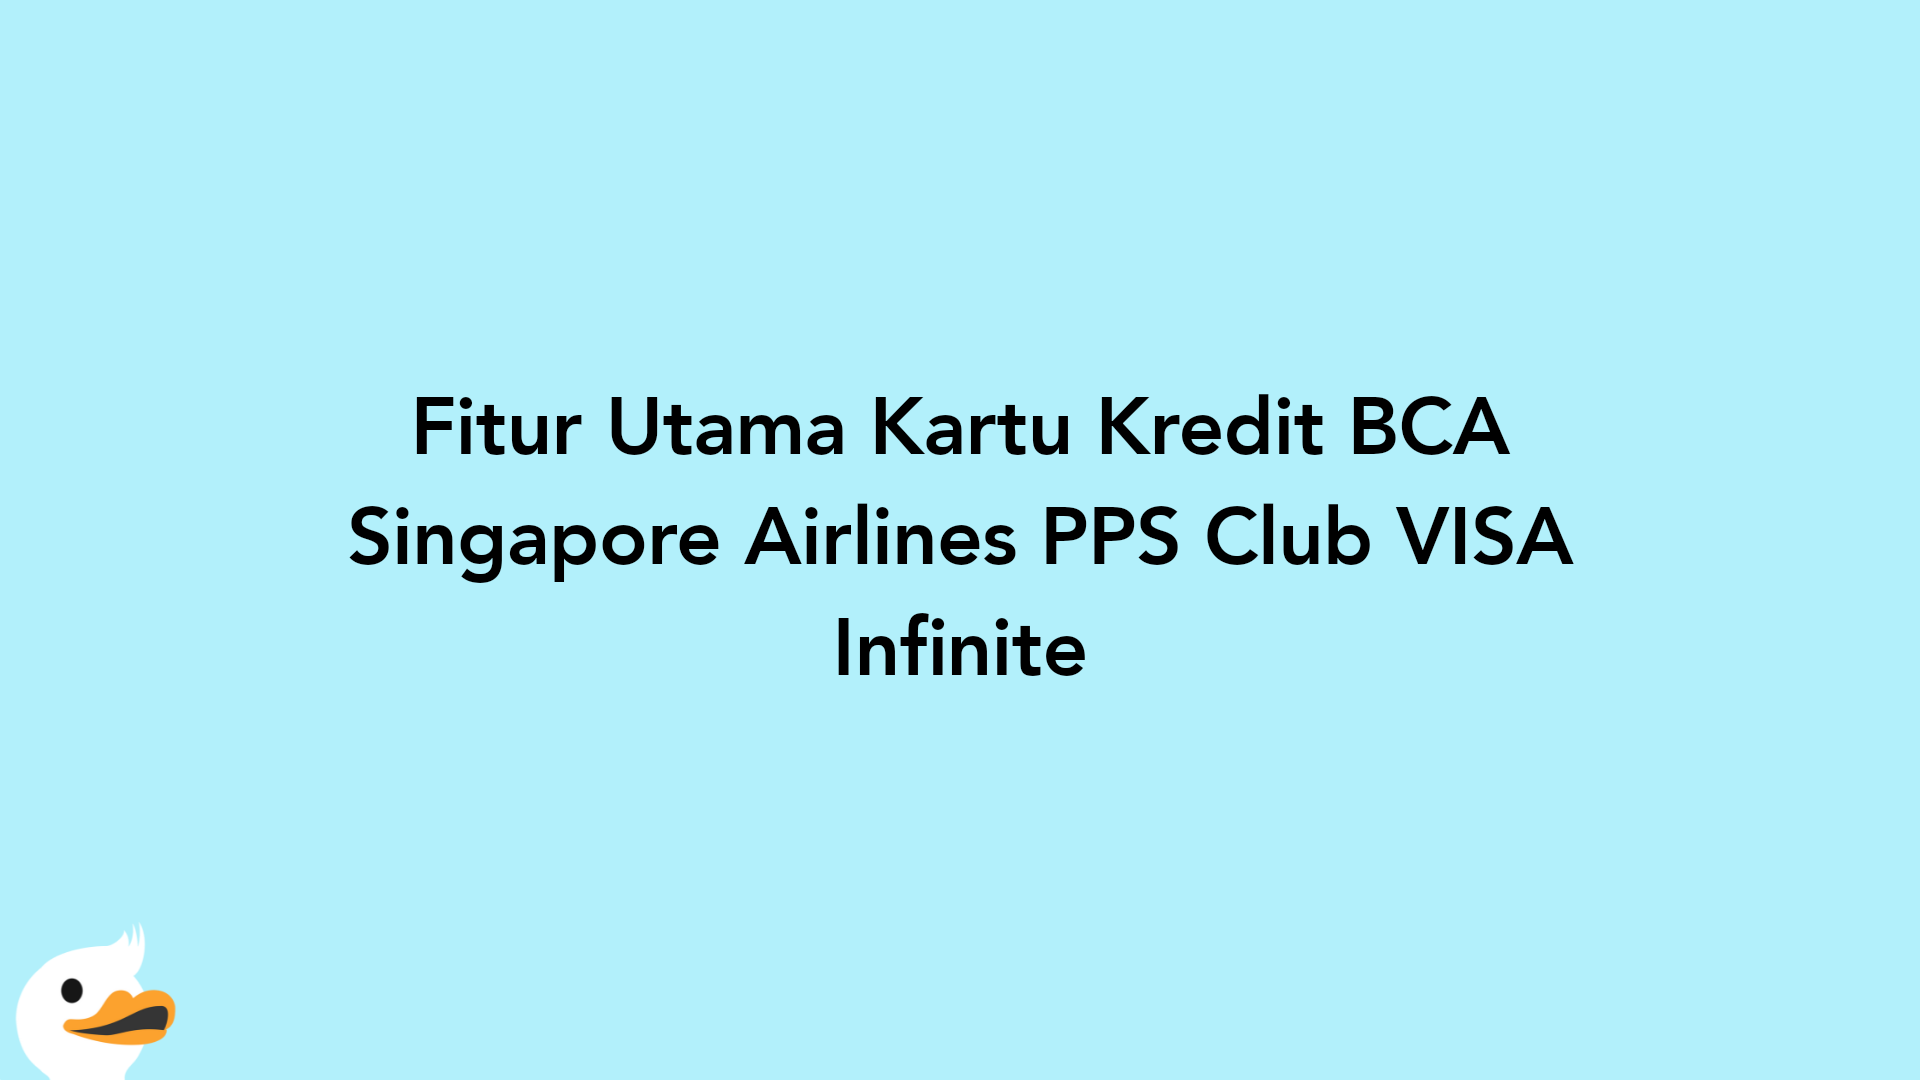 Fitur Utama Kartu Kredit BCA Singapore Airlines PPS Club VISA Infinite